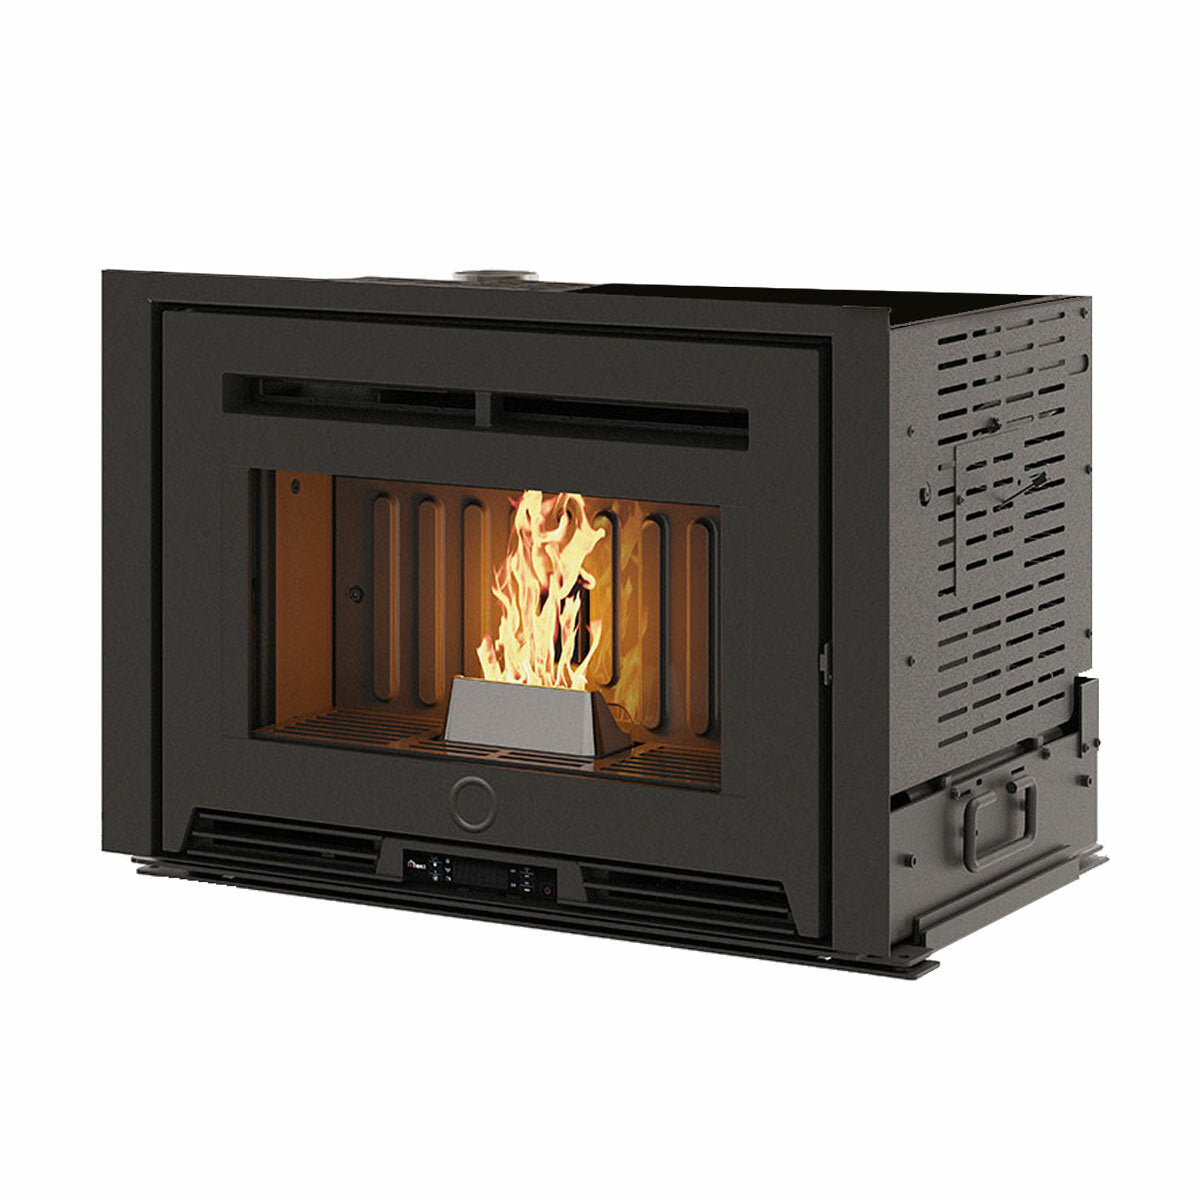 Pellet fireplace insert EK63 PELLEK110+ - Edilkamin group - 10.5 kW with ducted air WiFi